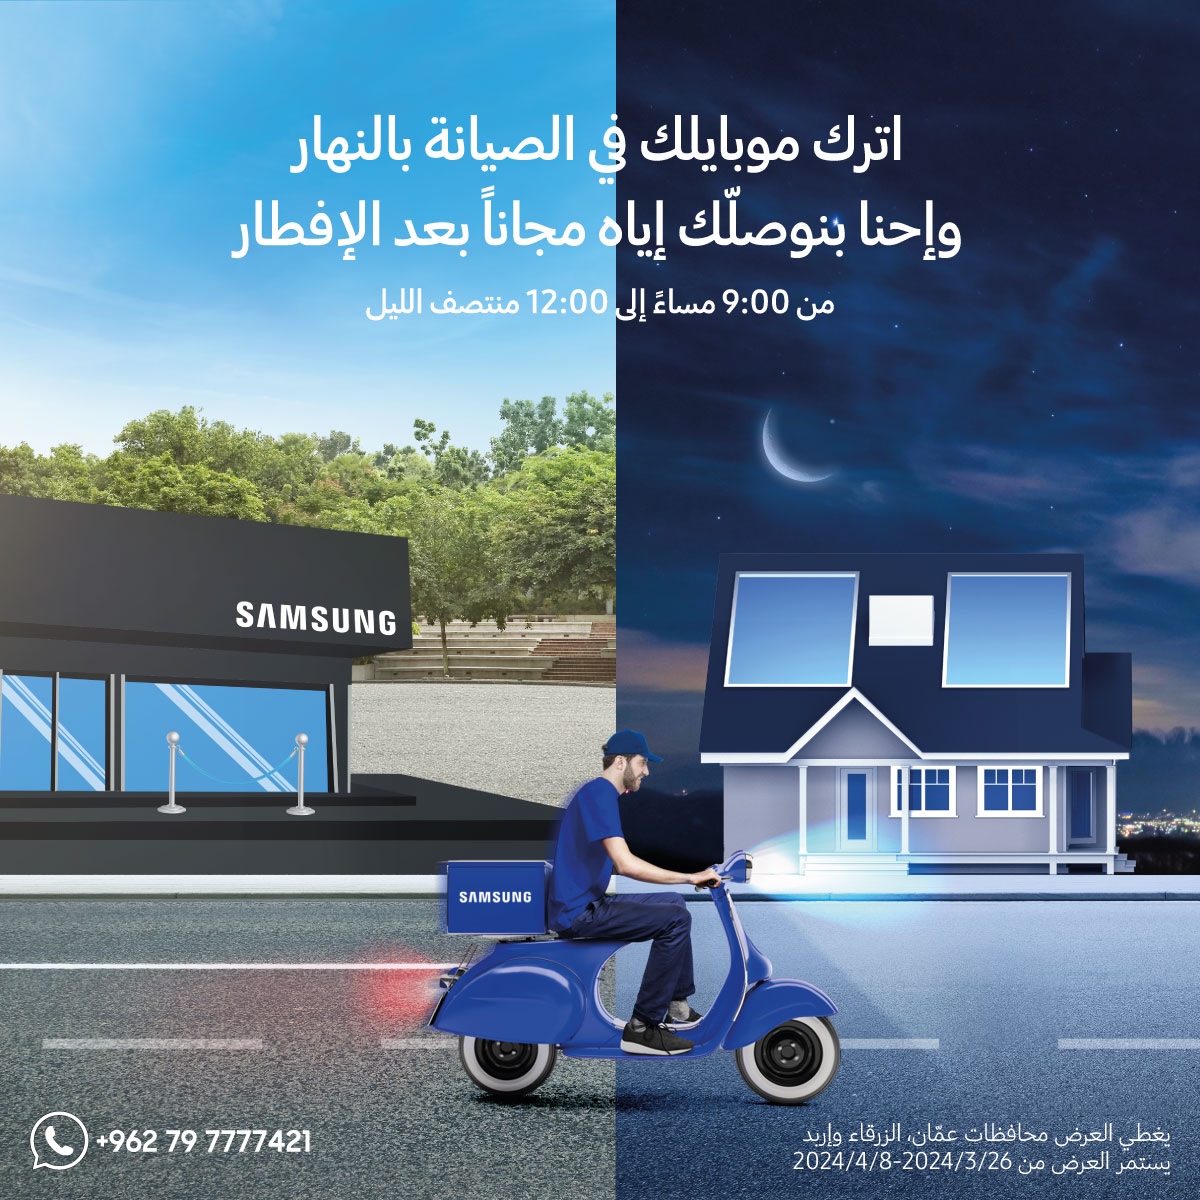 سامسونج إلكترونيكس المشرق العربي تقدم خدمة توصيل الهواتف الذكية من مراكز الصيانة للزبائن خلال الشهر الفضيل